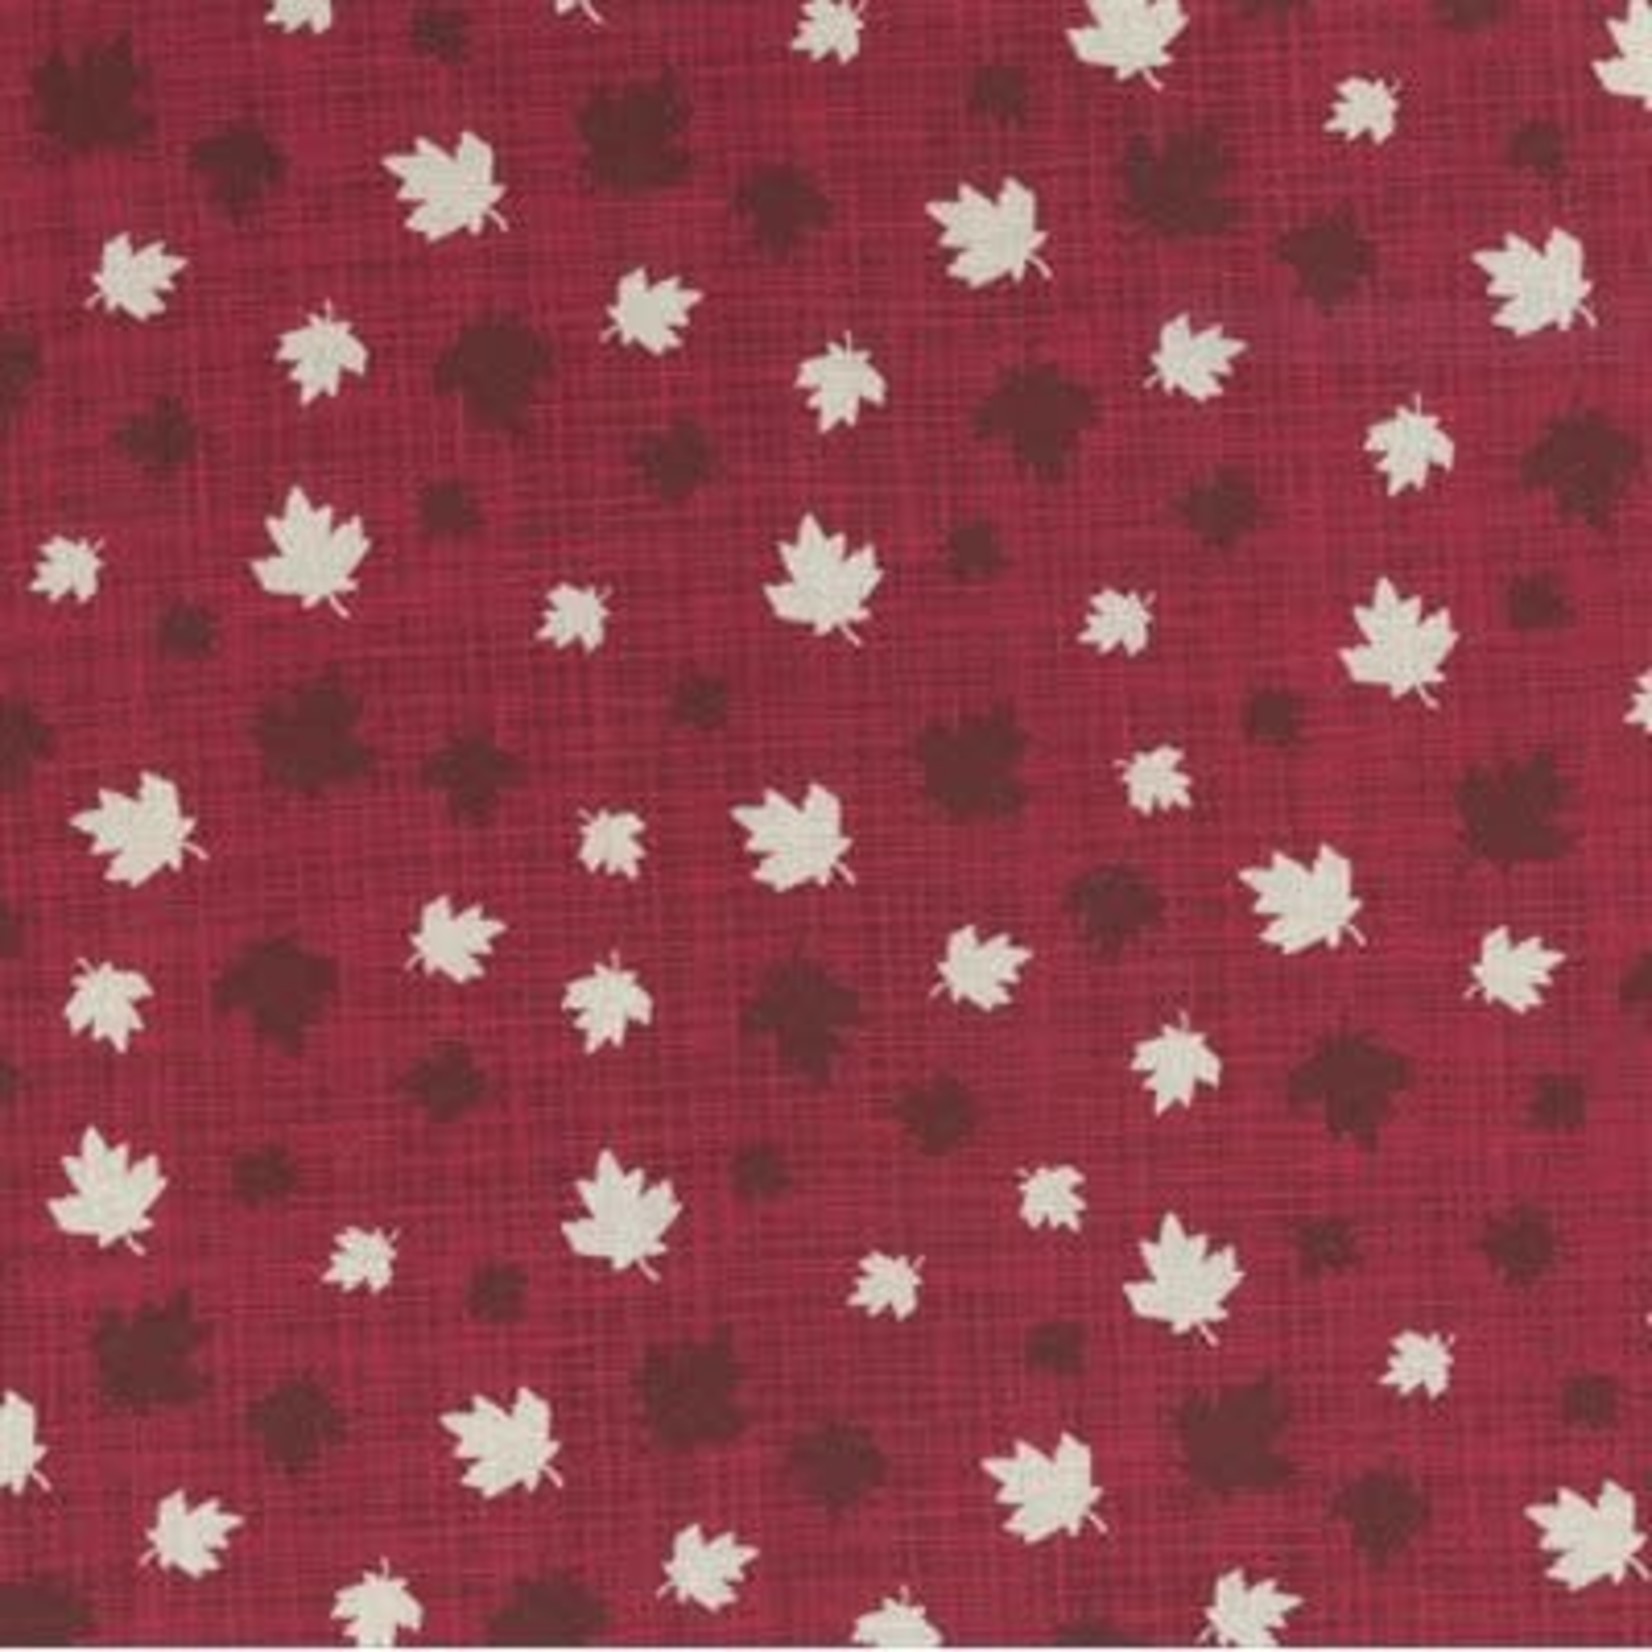 Kate & Birdie Paper Co. True North 2, Leaves, Red 513212-12 per cm or $20/m